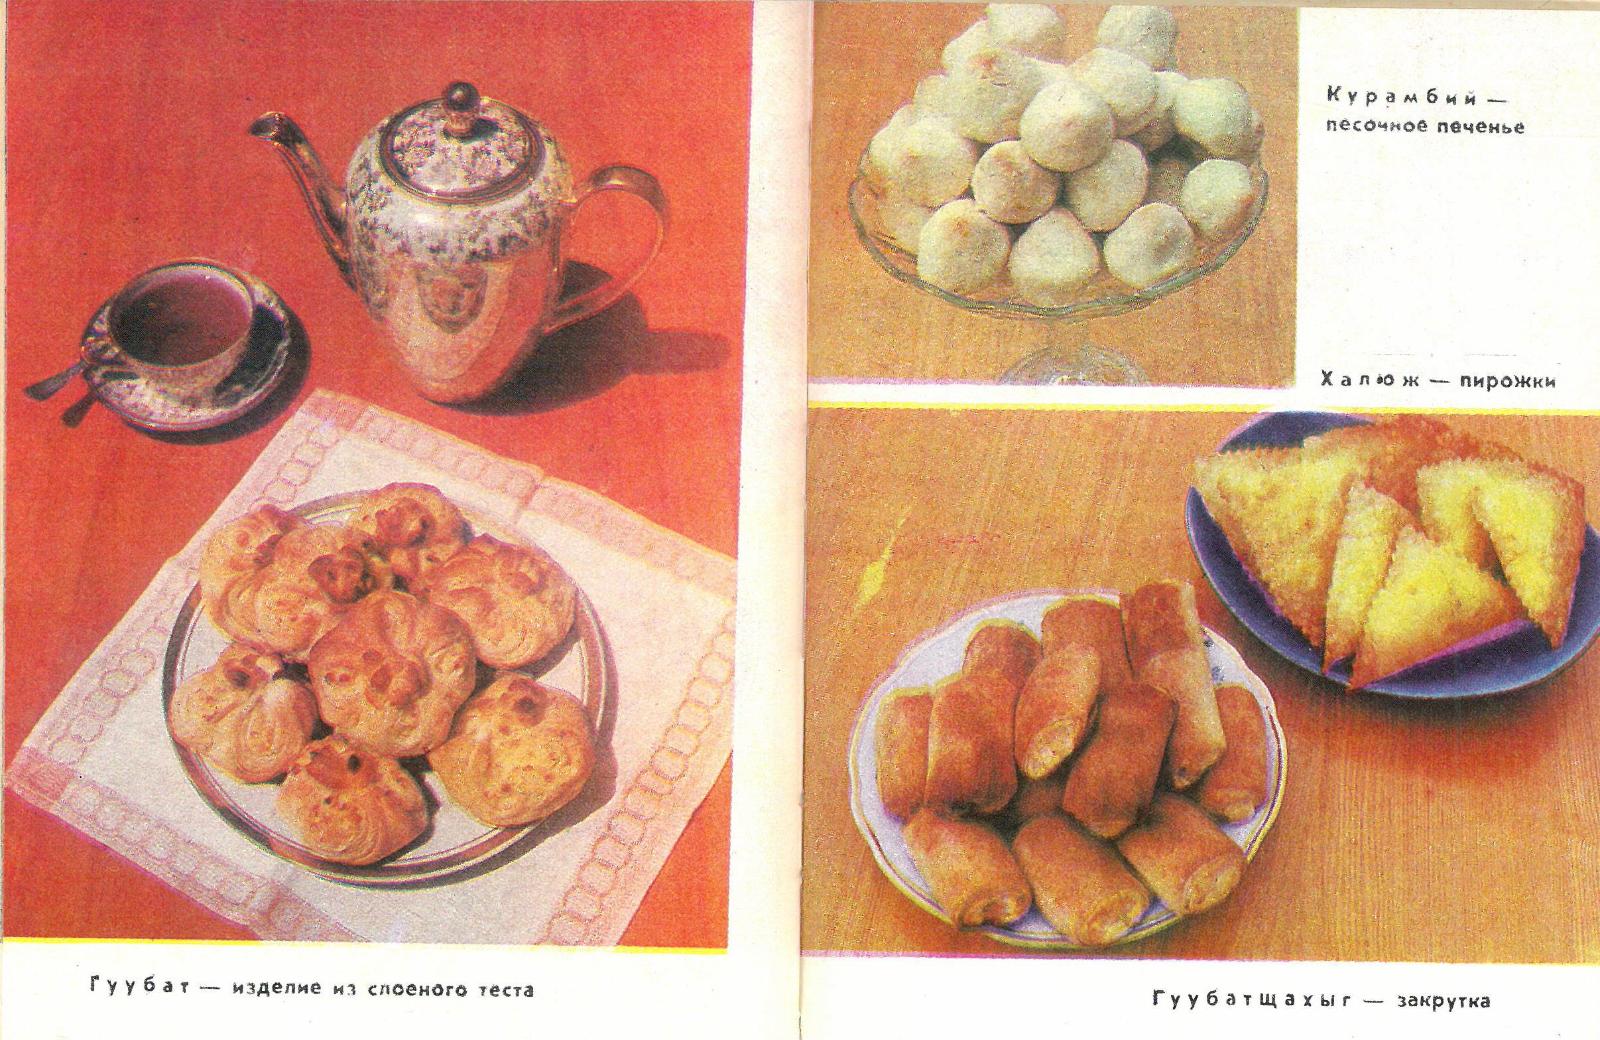 Иллюстрации из книги «Адыгейская кухня».